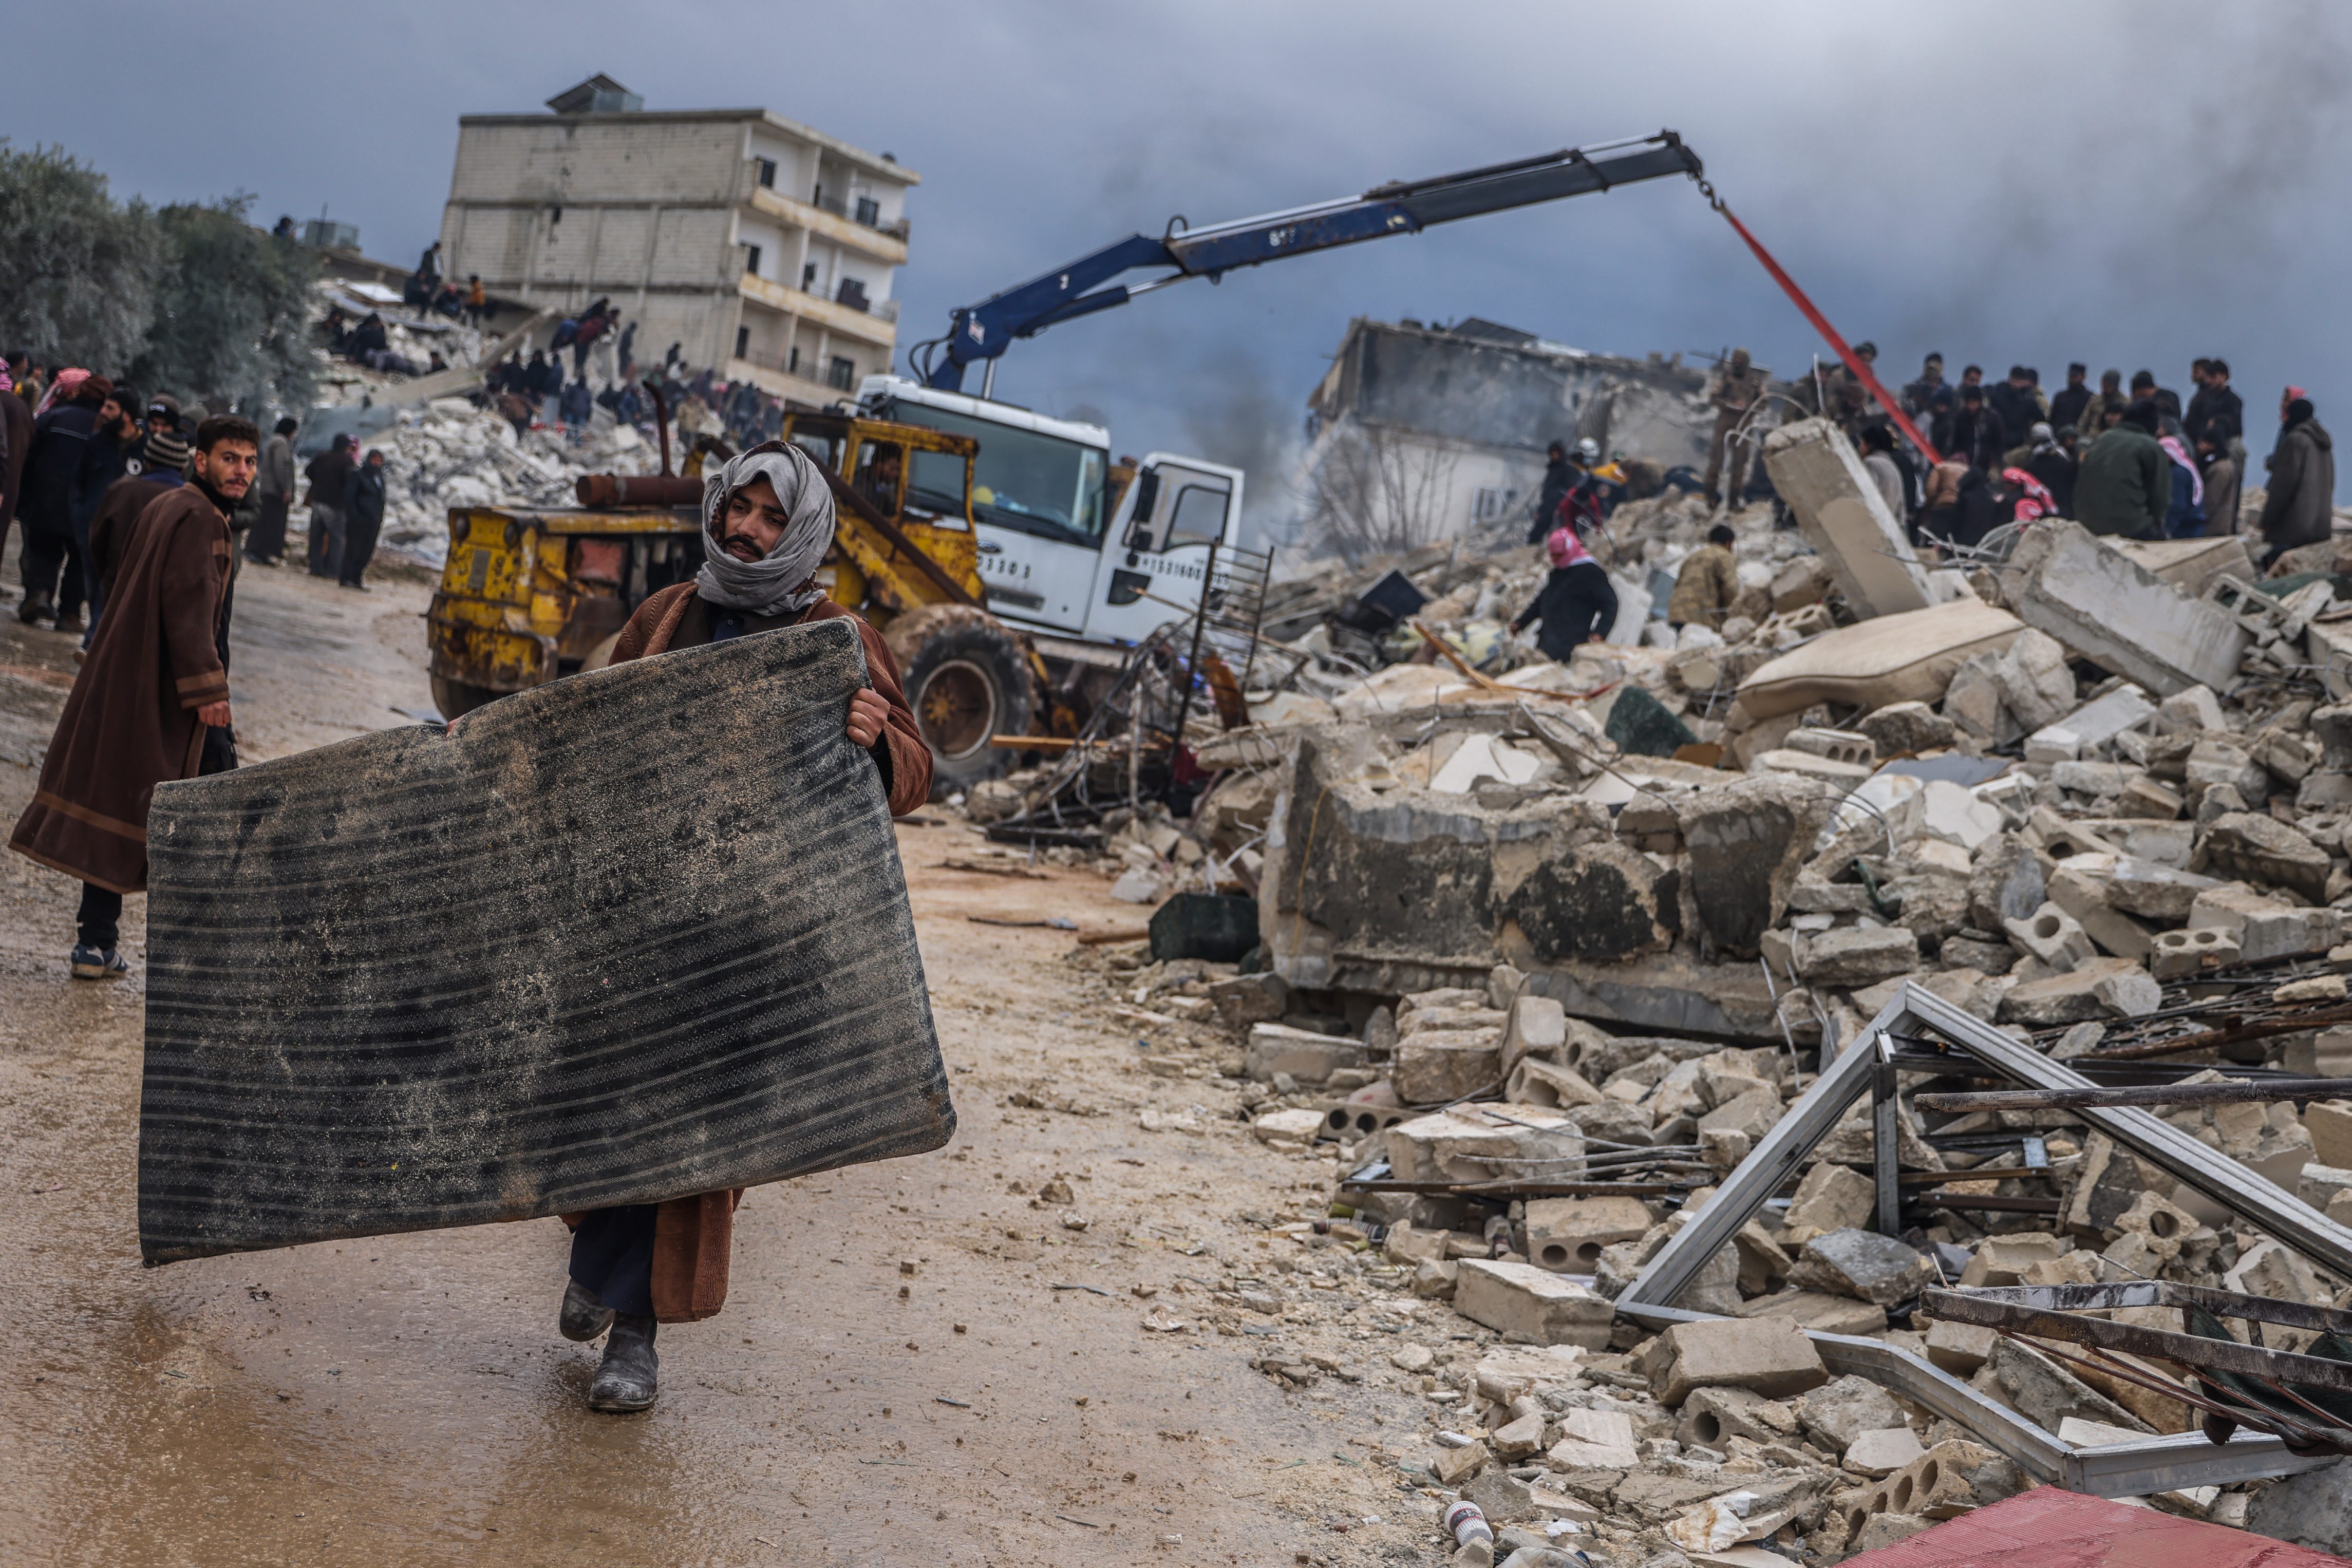 Un hombre, con una esterilla para protegerse del frío, pasa junto a un edificio derruido por el terremoto, donde varias personas buscan supervivientes entre los escombros, en Harem (Siria).